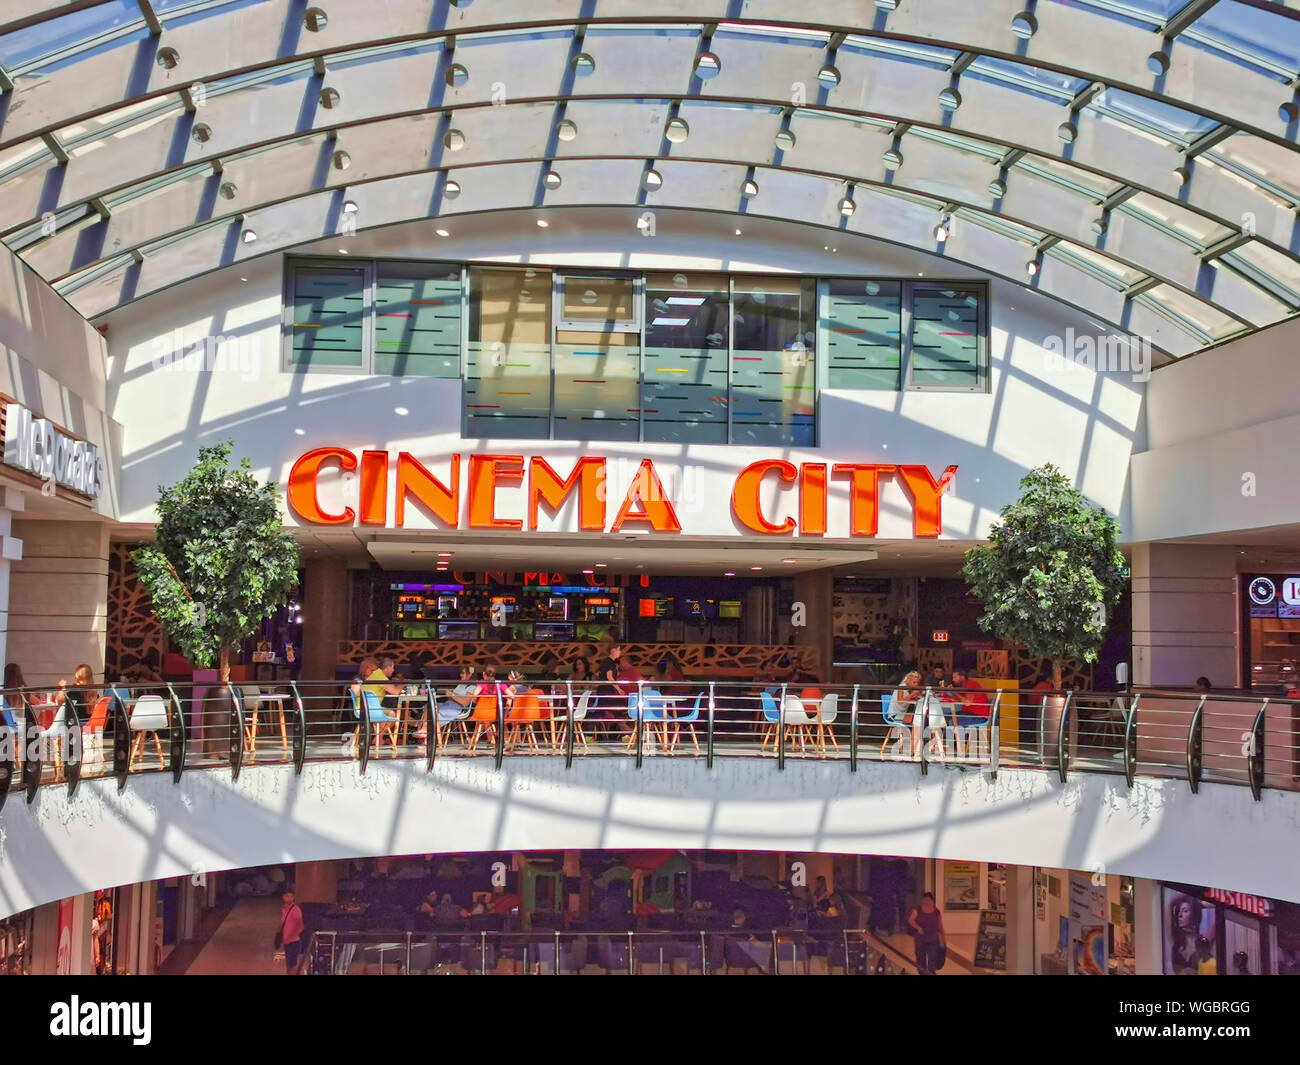 BACAU, RUMANIA - Agosto 20, 2019: la ciudad del cine y restaurantes en Arena  Mall Fotografía de stock - Alamy